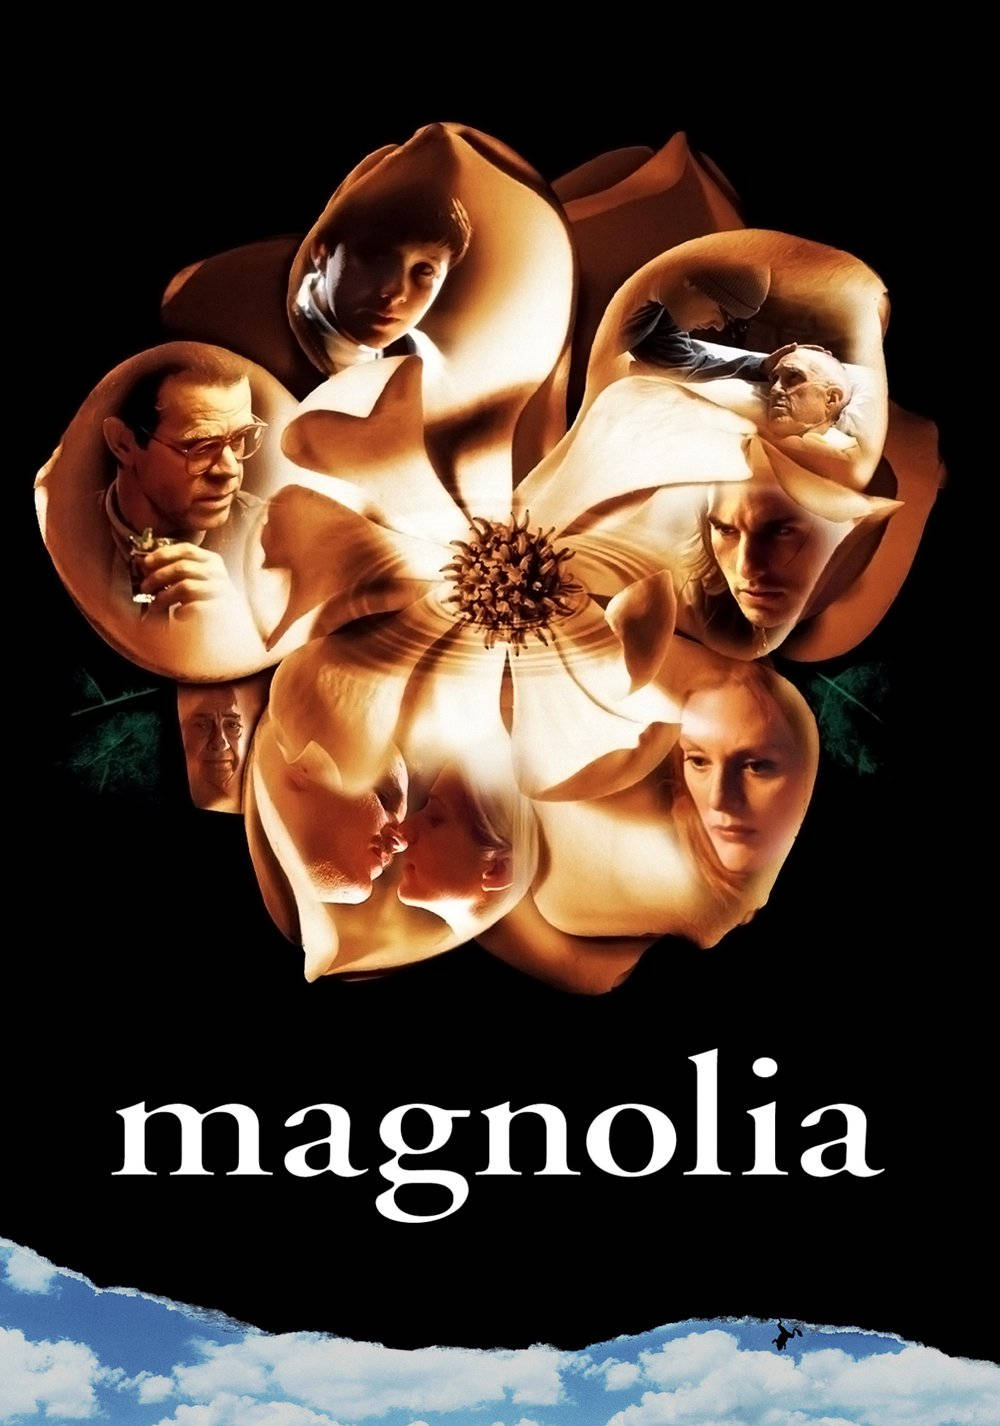 Magnoliasfilmkaraktärer I Blomblad. Wallpaper